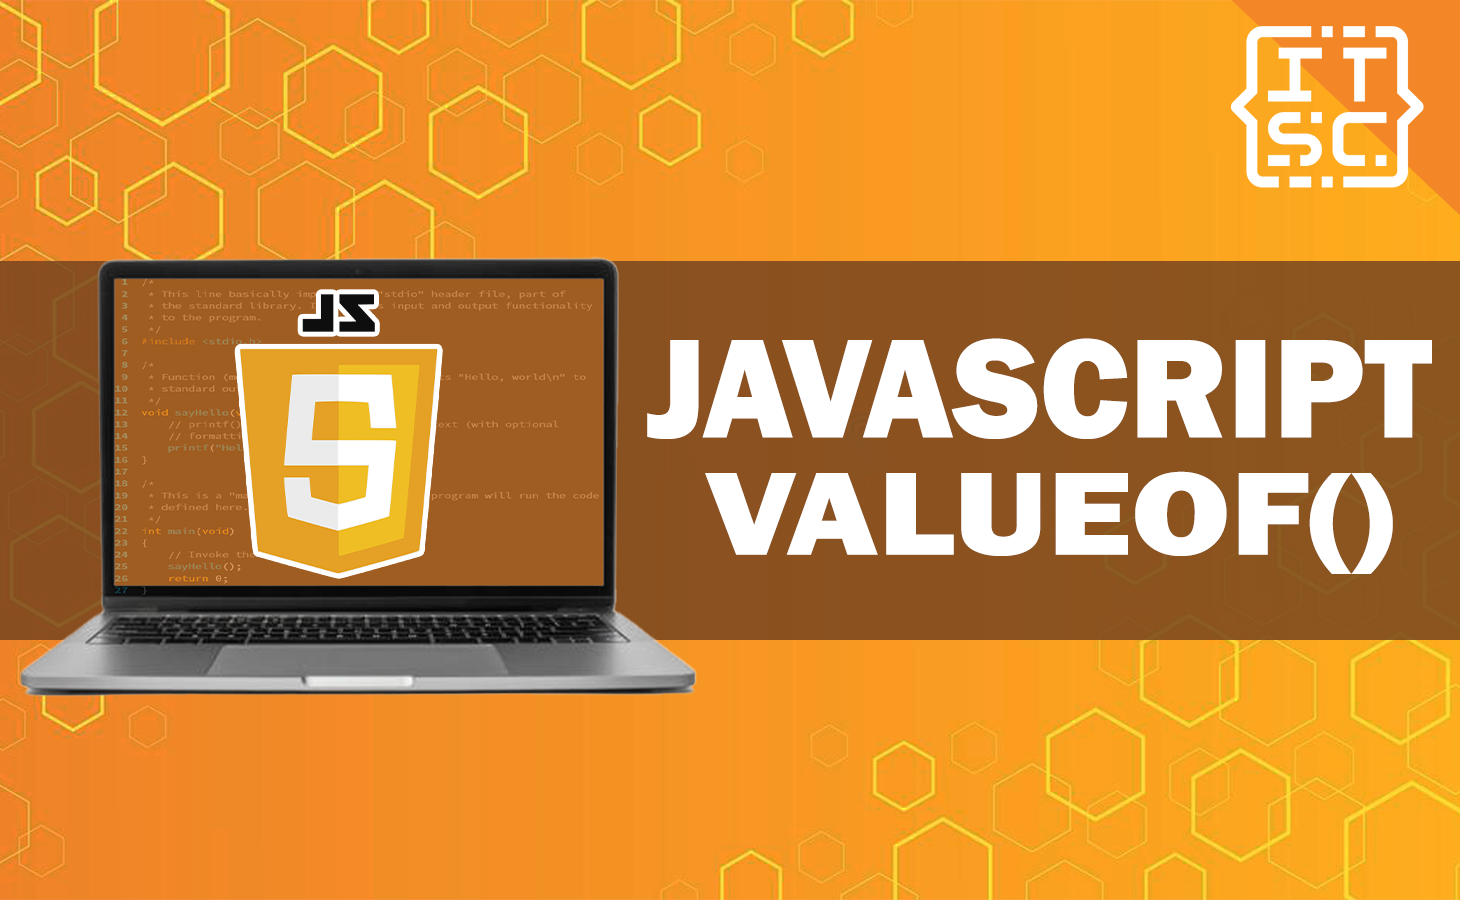 Javascript valueof